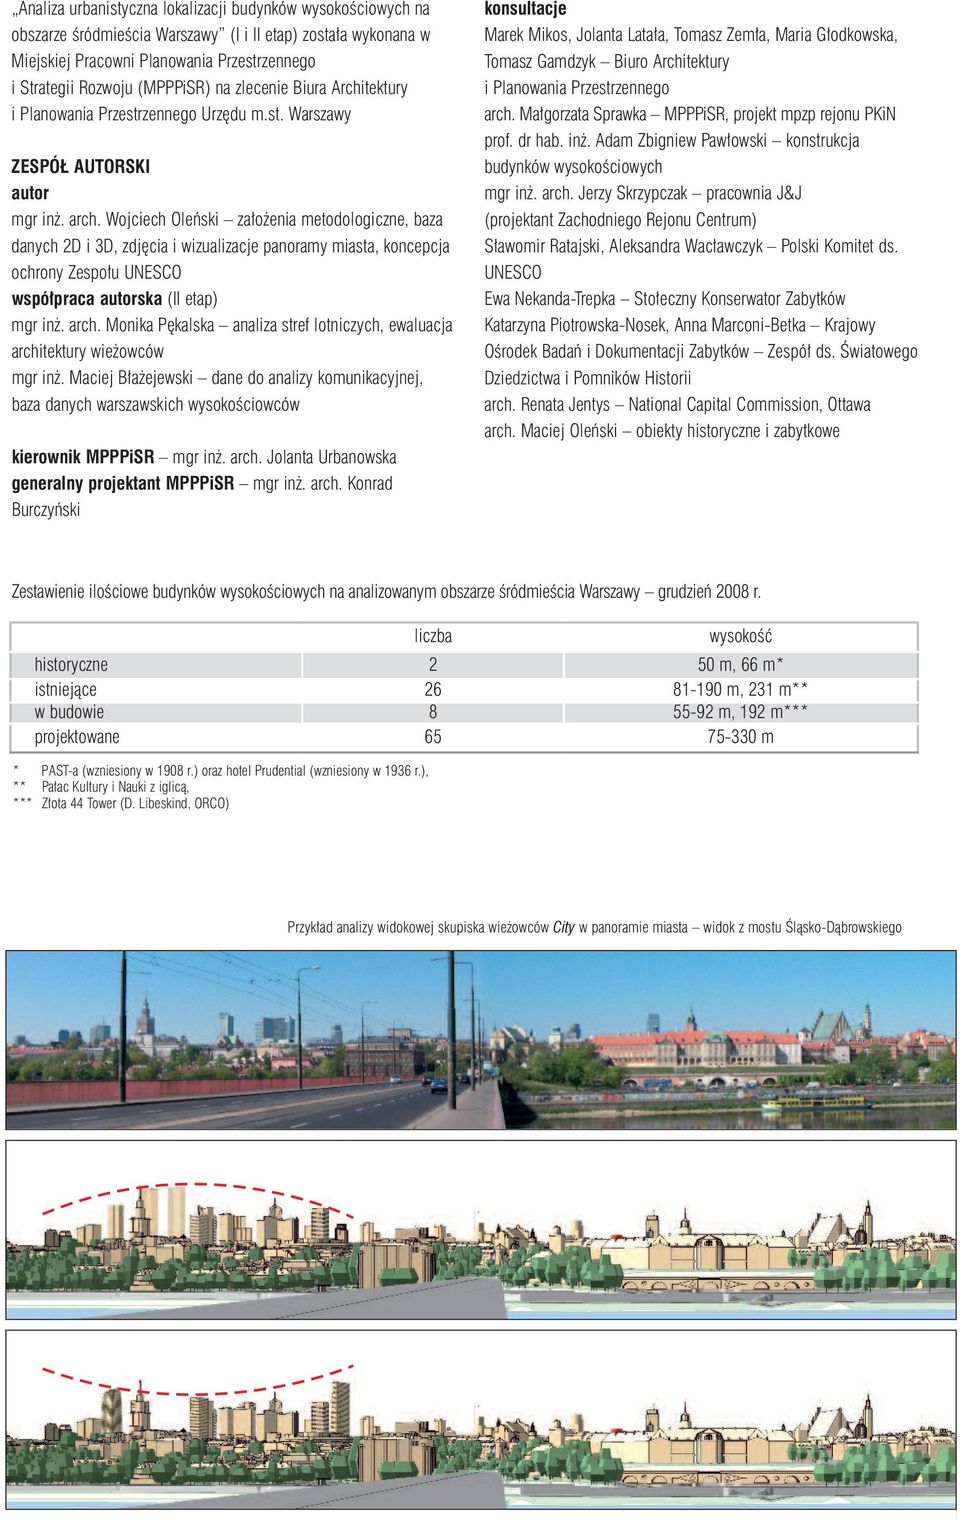 Wojciech Oleński założenia metodologiczne, baza danych 2D i 3D, zdjęcia i wizualizacje panoramy miasta, koncepcja ochrony Zespołu UNESCO współpraca autorska (II etap) mgr inż. arch.